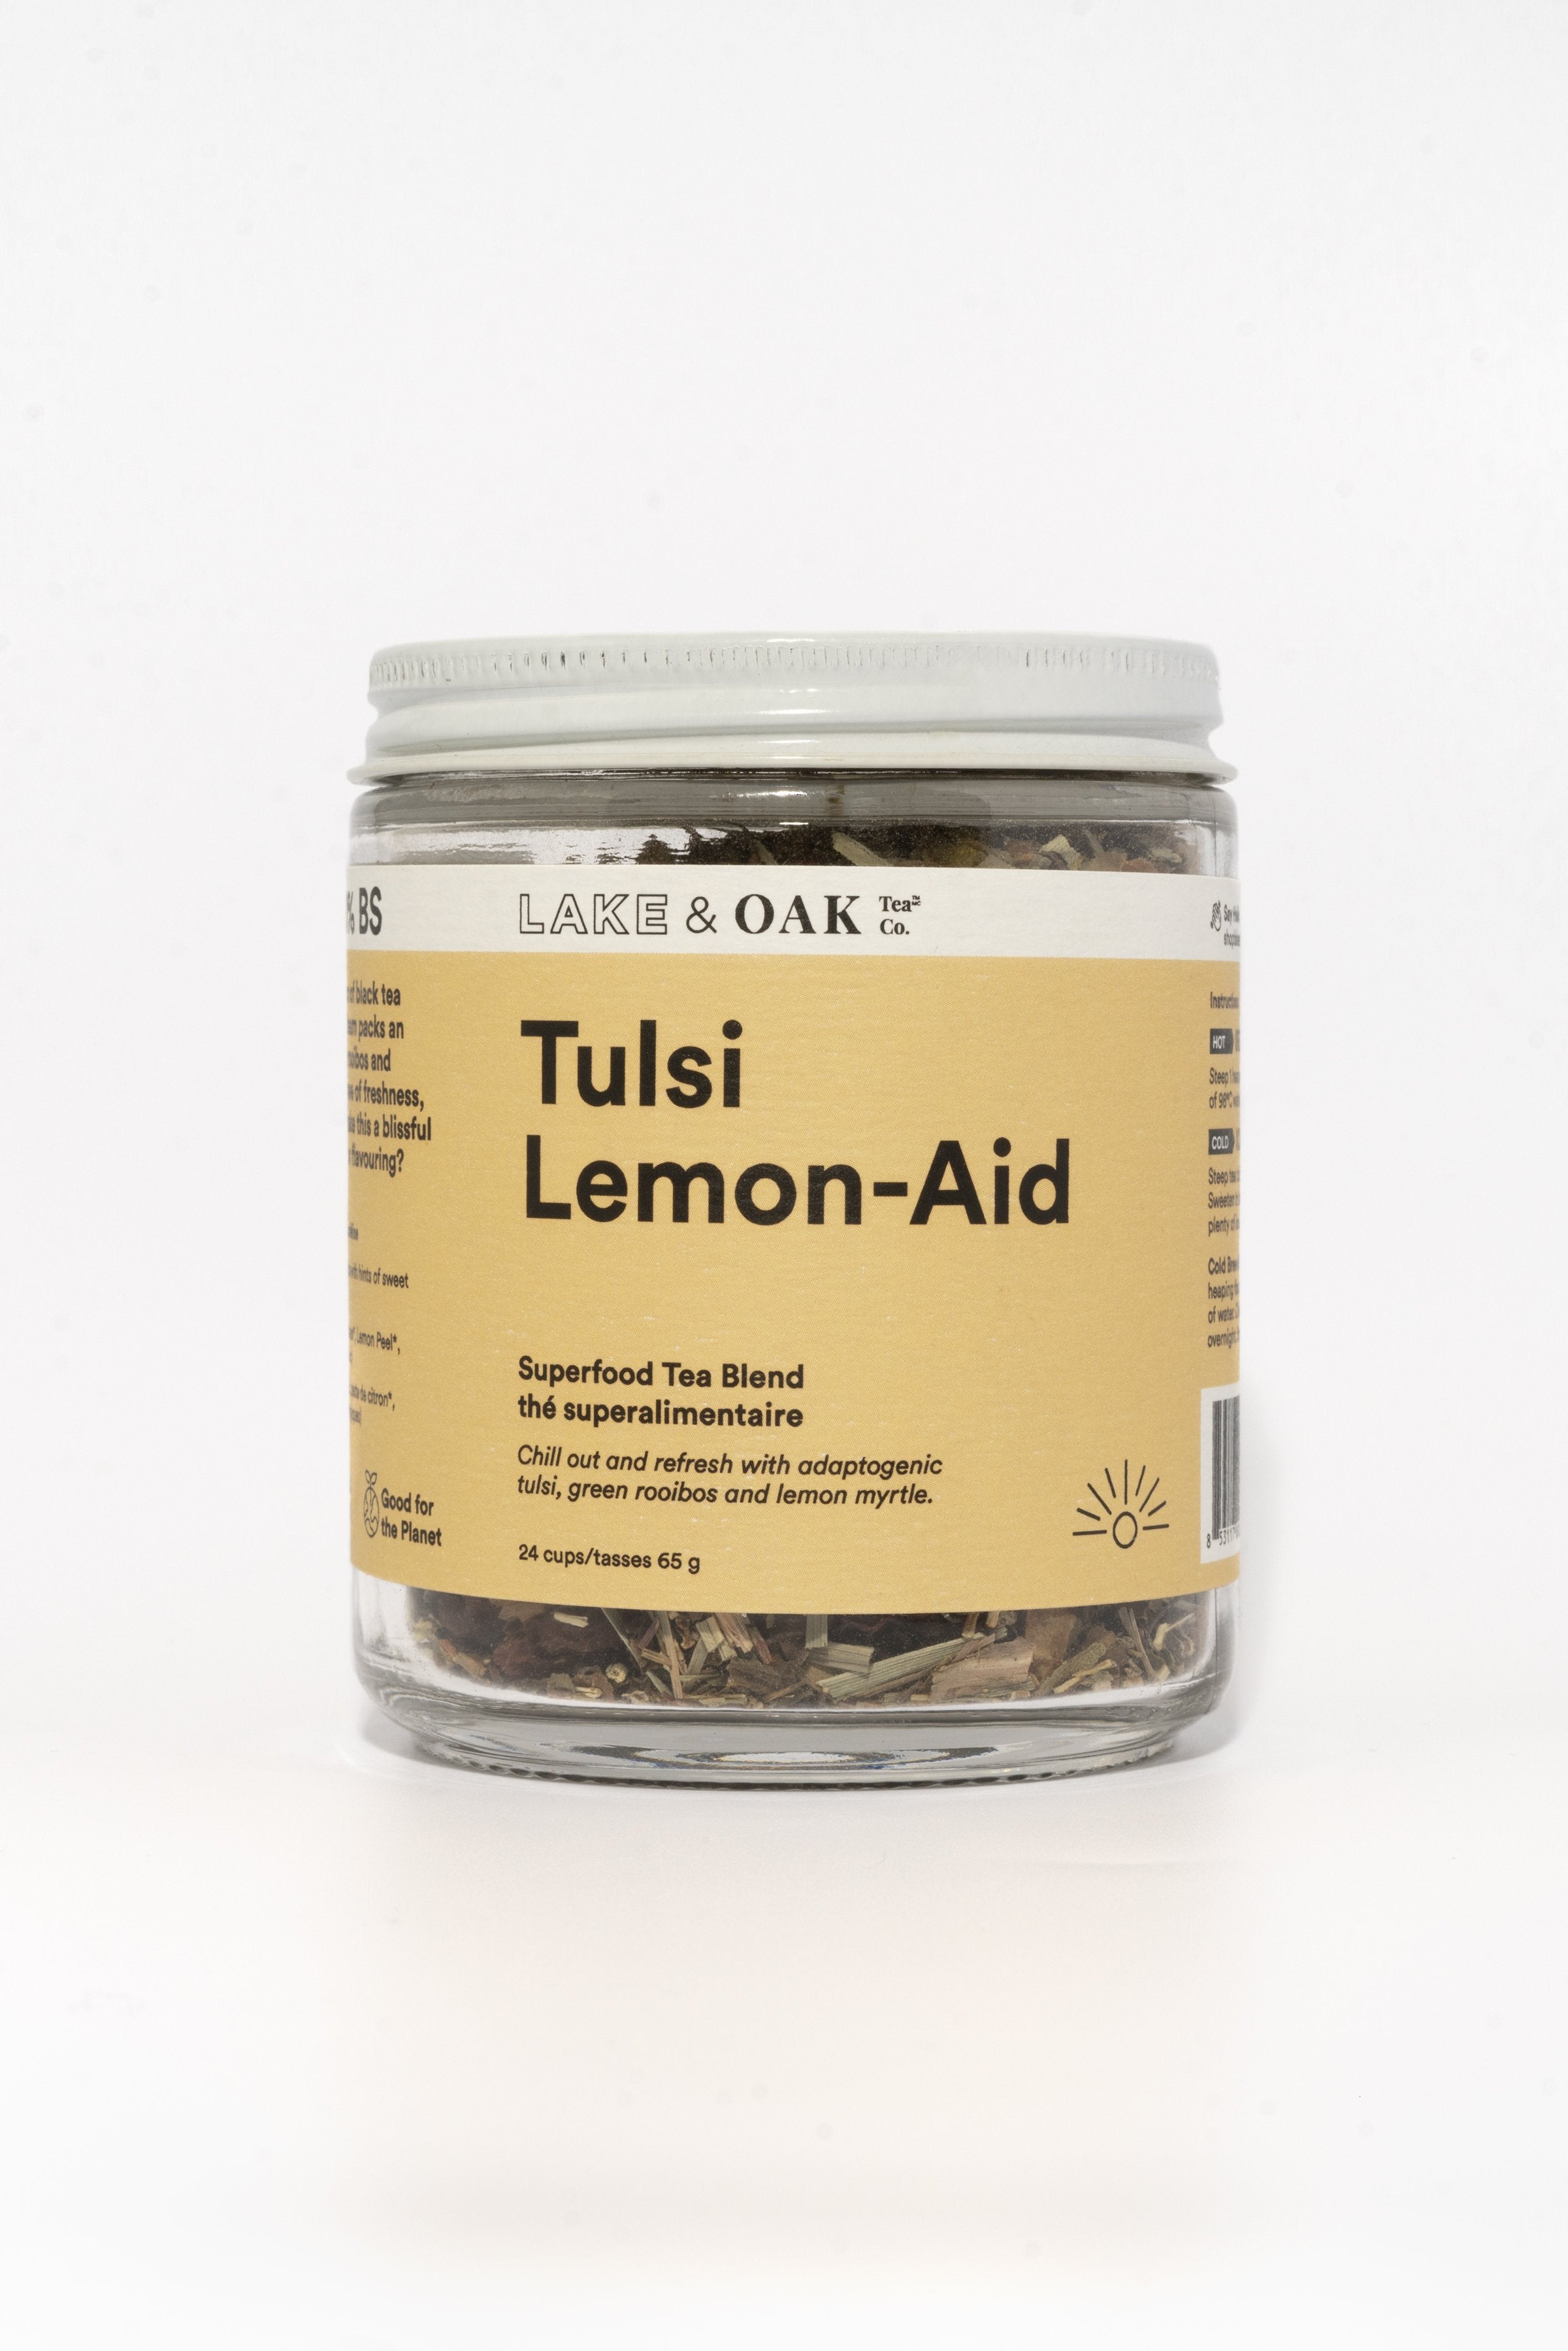 Tulsi Lemon-Aid -Superfood Tea Blend